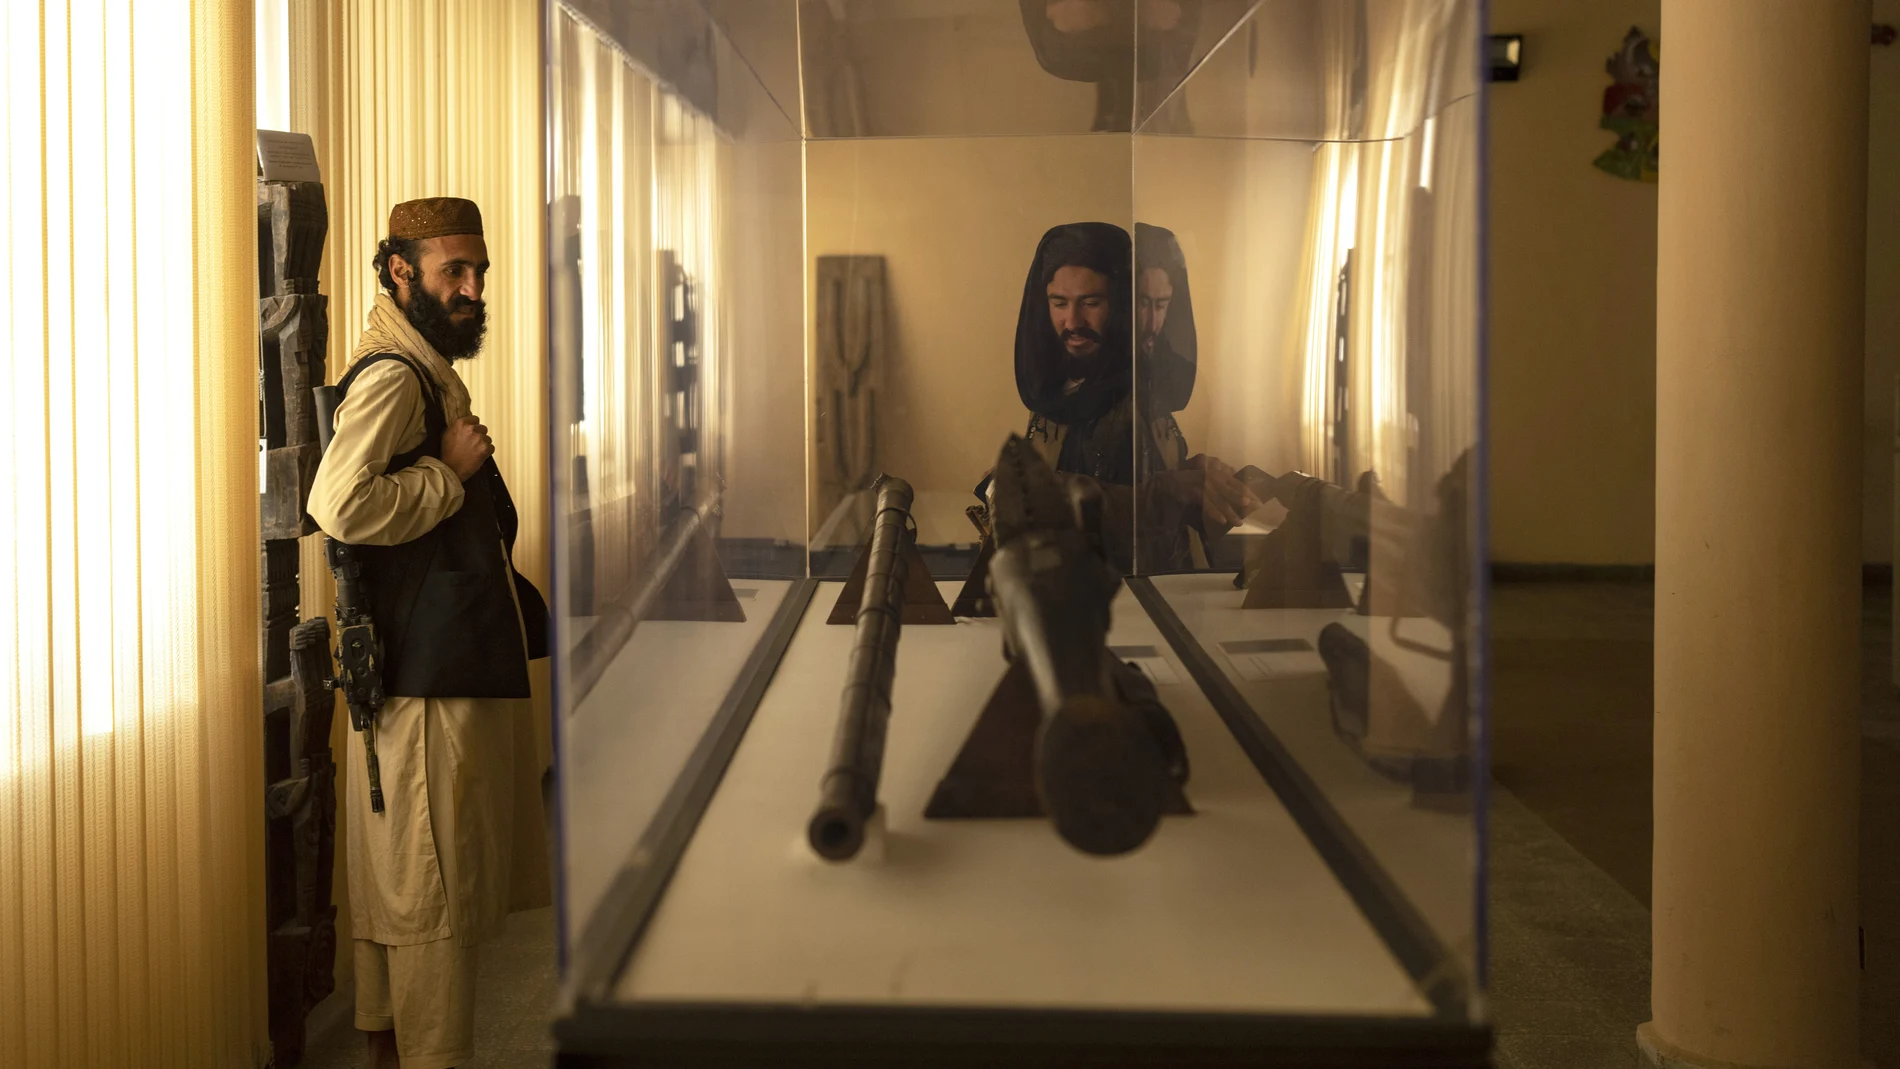 El combatiente talibán Mansoor Zulfiqar, izquierda, visita el Museo Nacional de Afganistán el 6 de diciembre de 2021 (AP Photo/Petros Giannakouris)